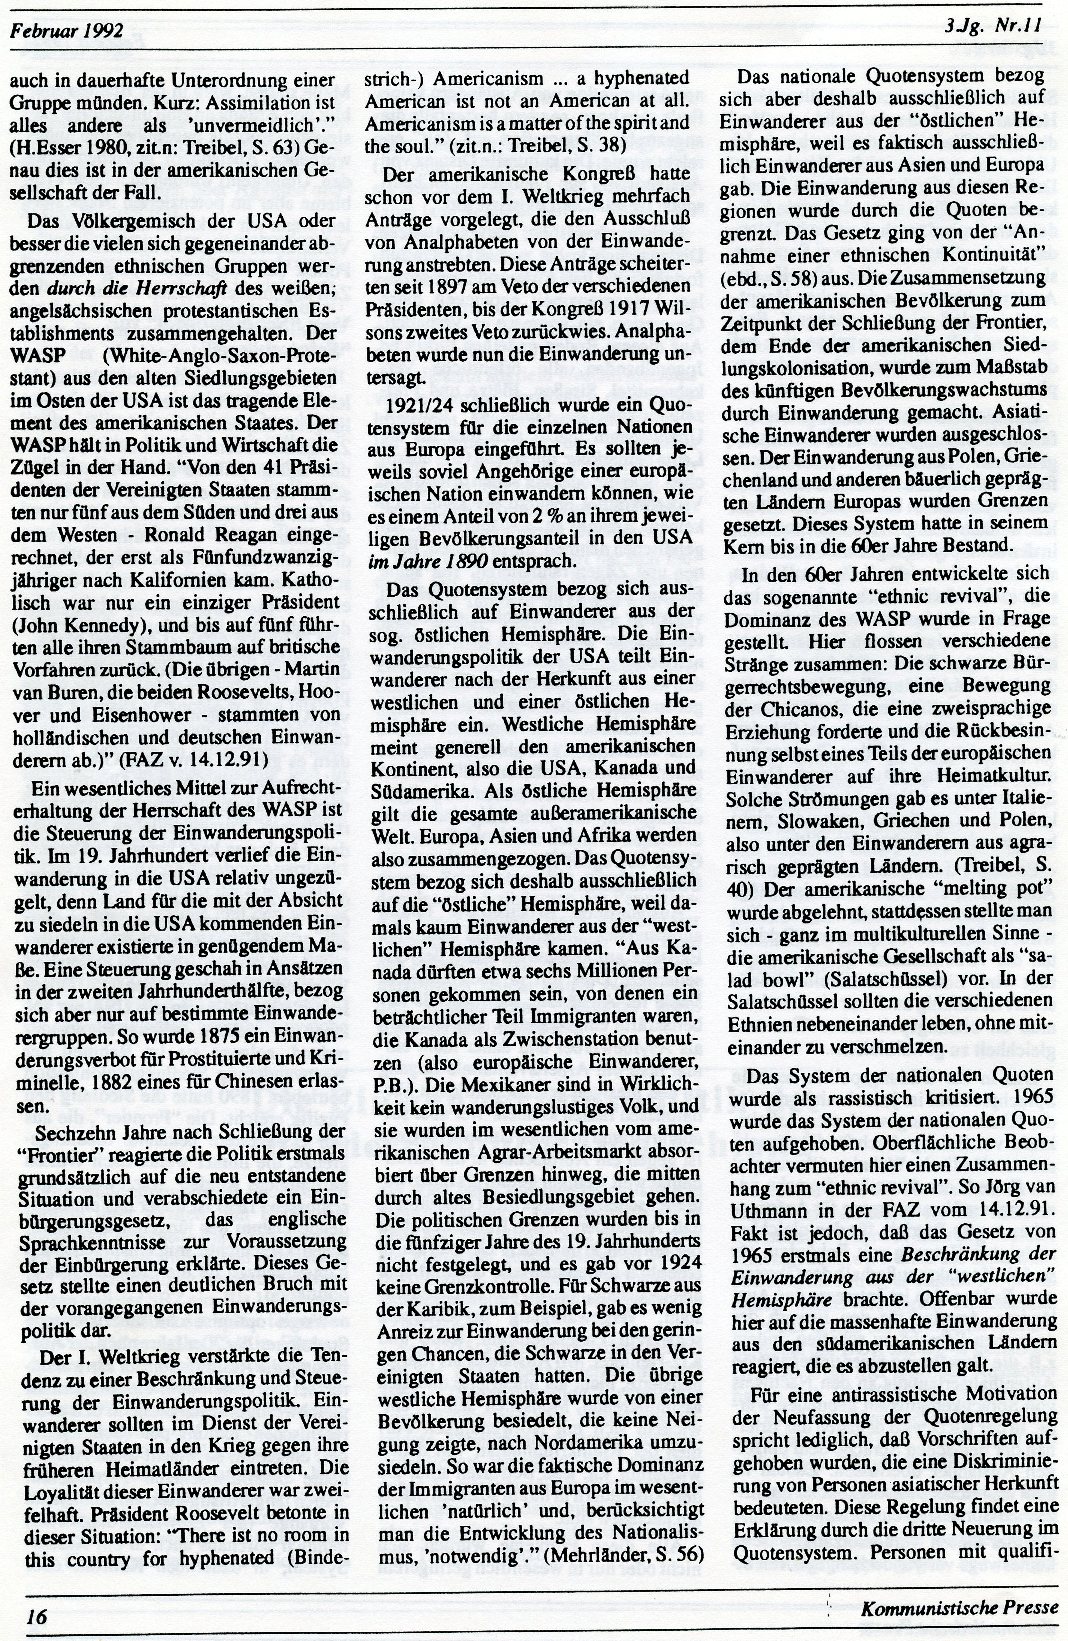 Gelsenkirchen_Kommunistische_Presse_1992_11_016